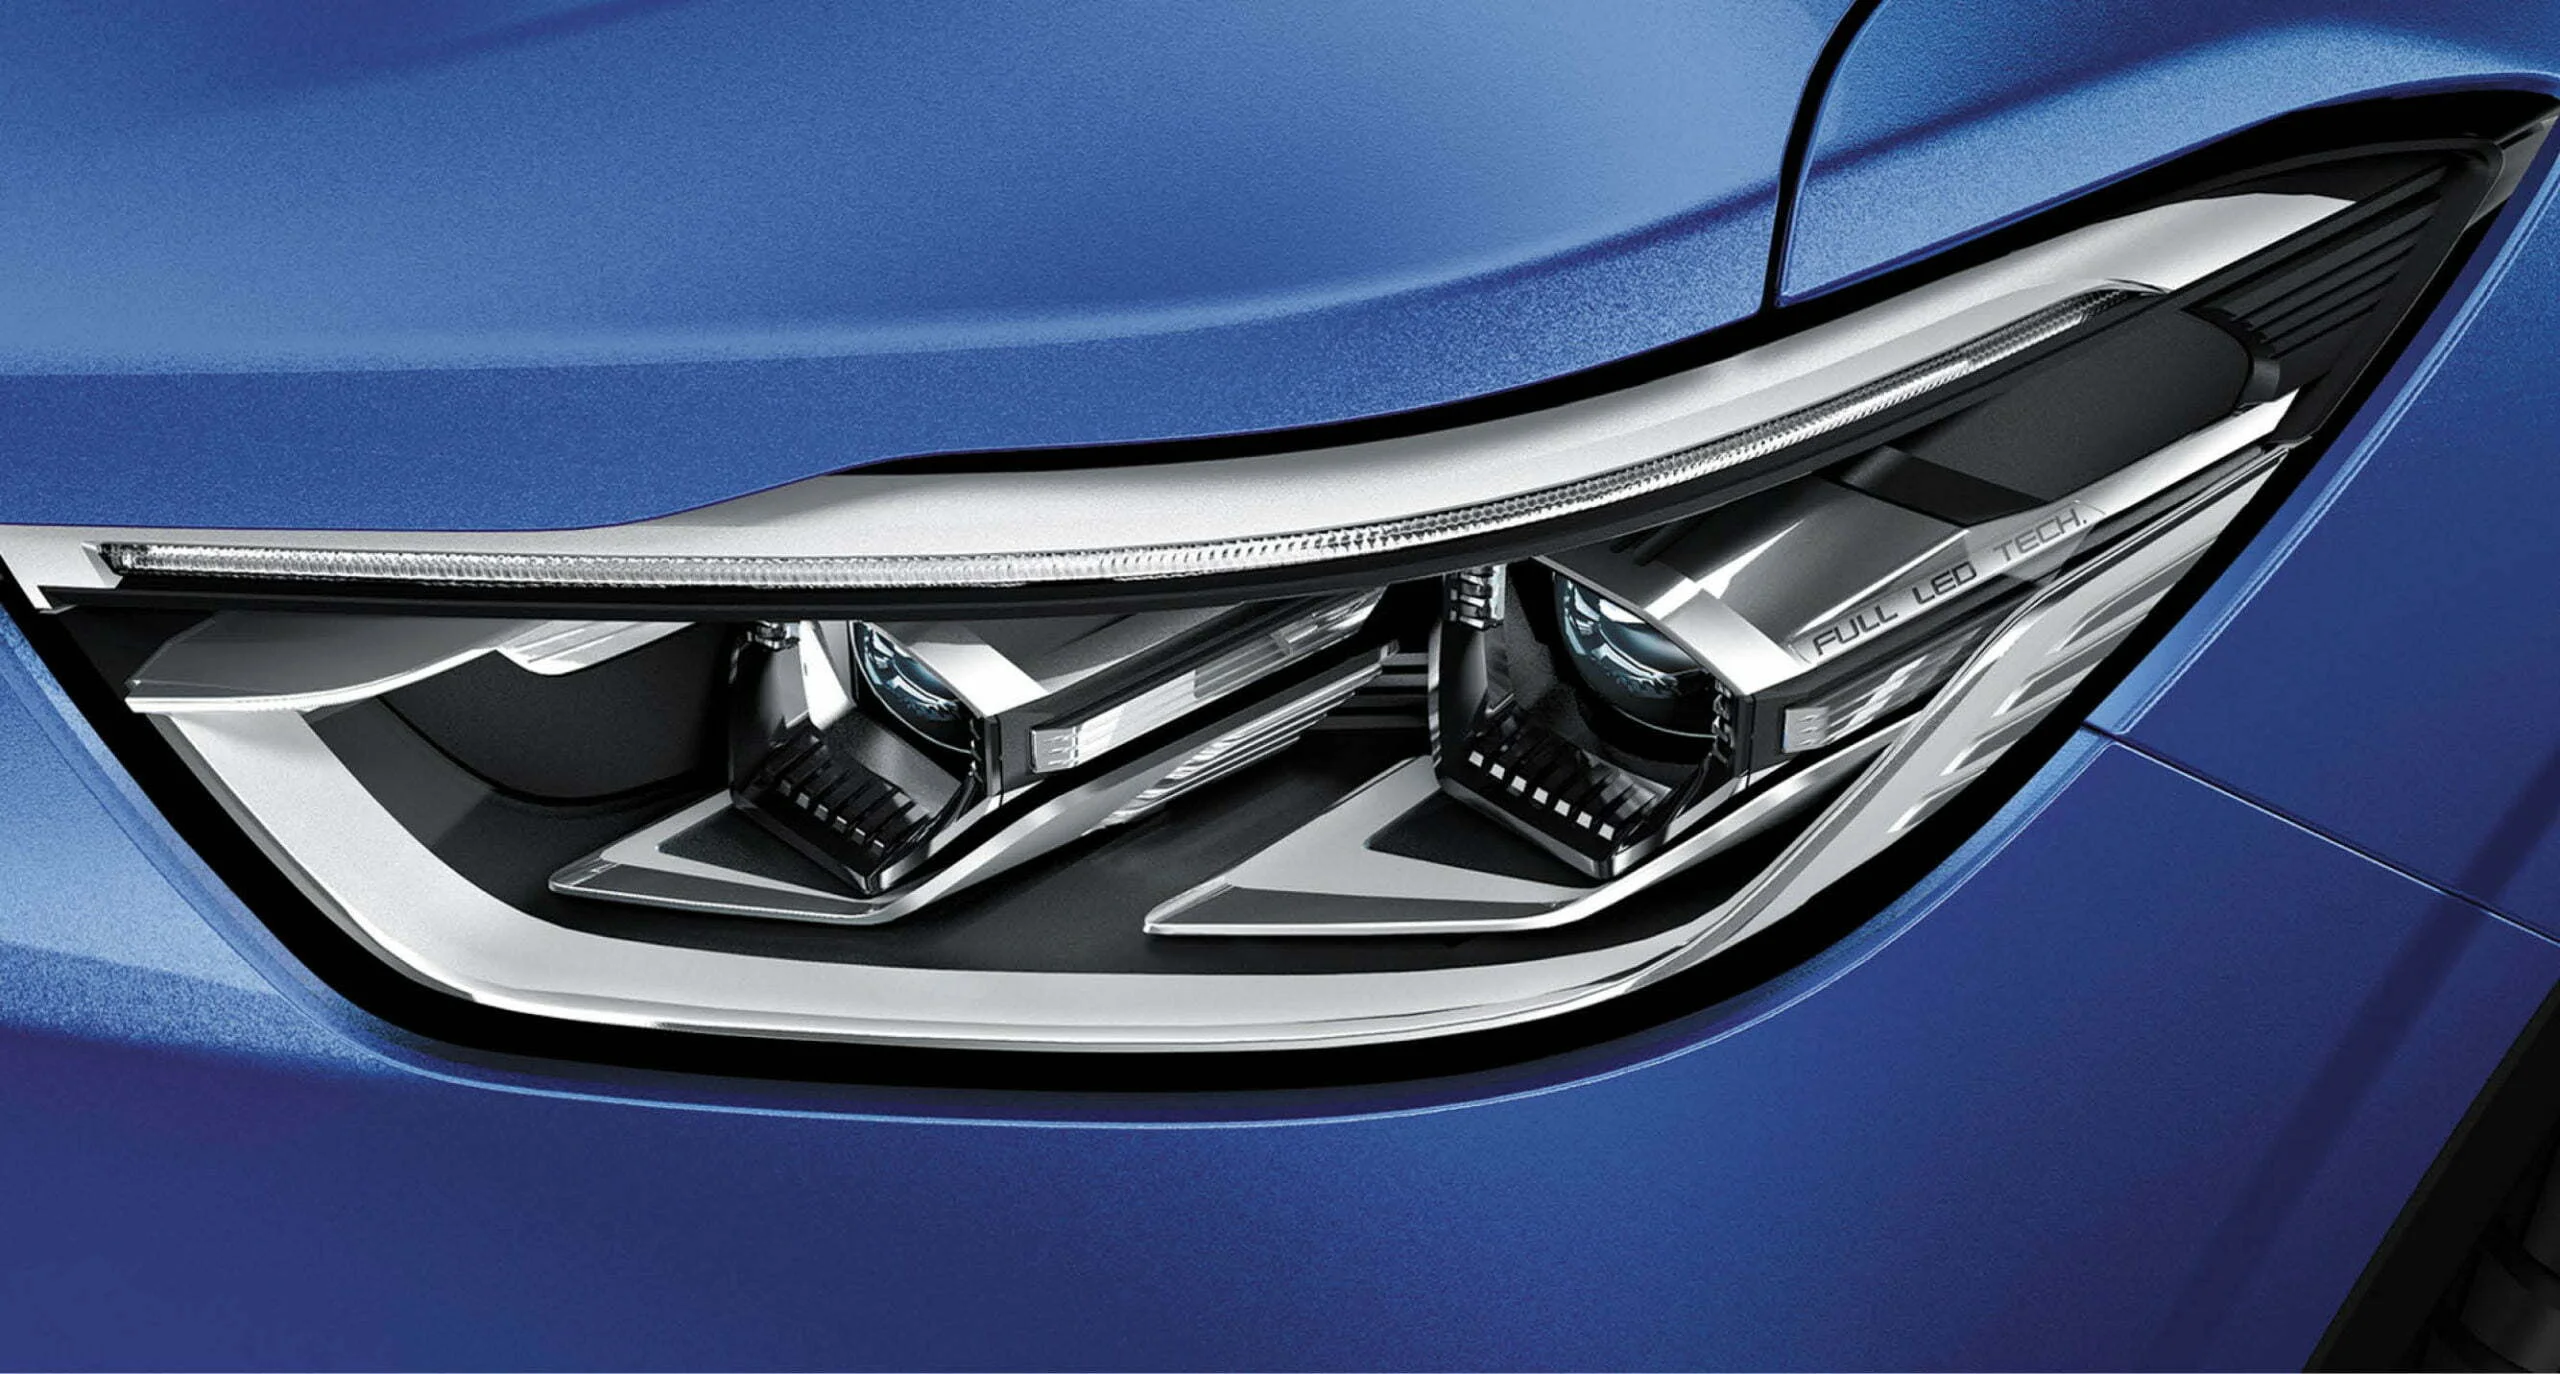 Los ojos afilados del SUV Maxus D90 hacen que la cabeza del automóvil se vea más deportiva con un color de luz puro.